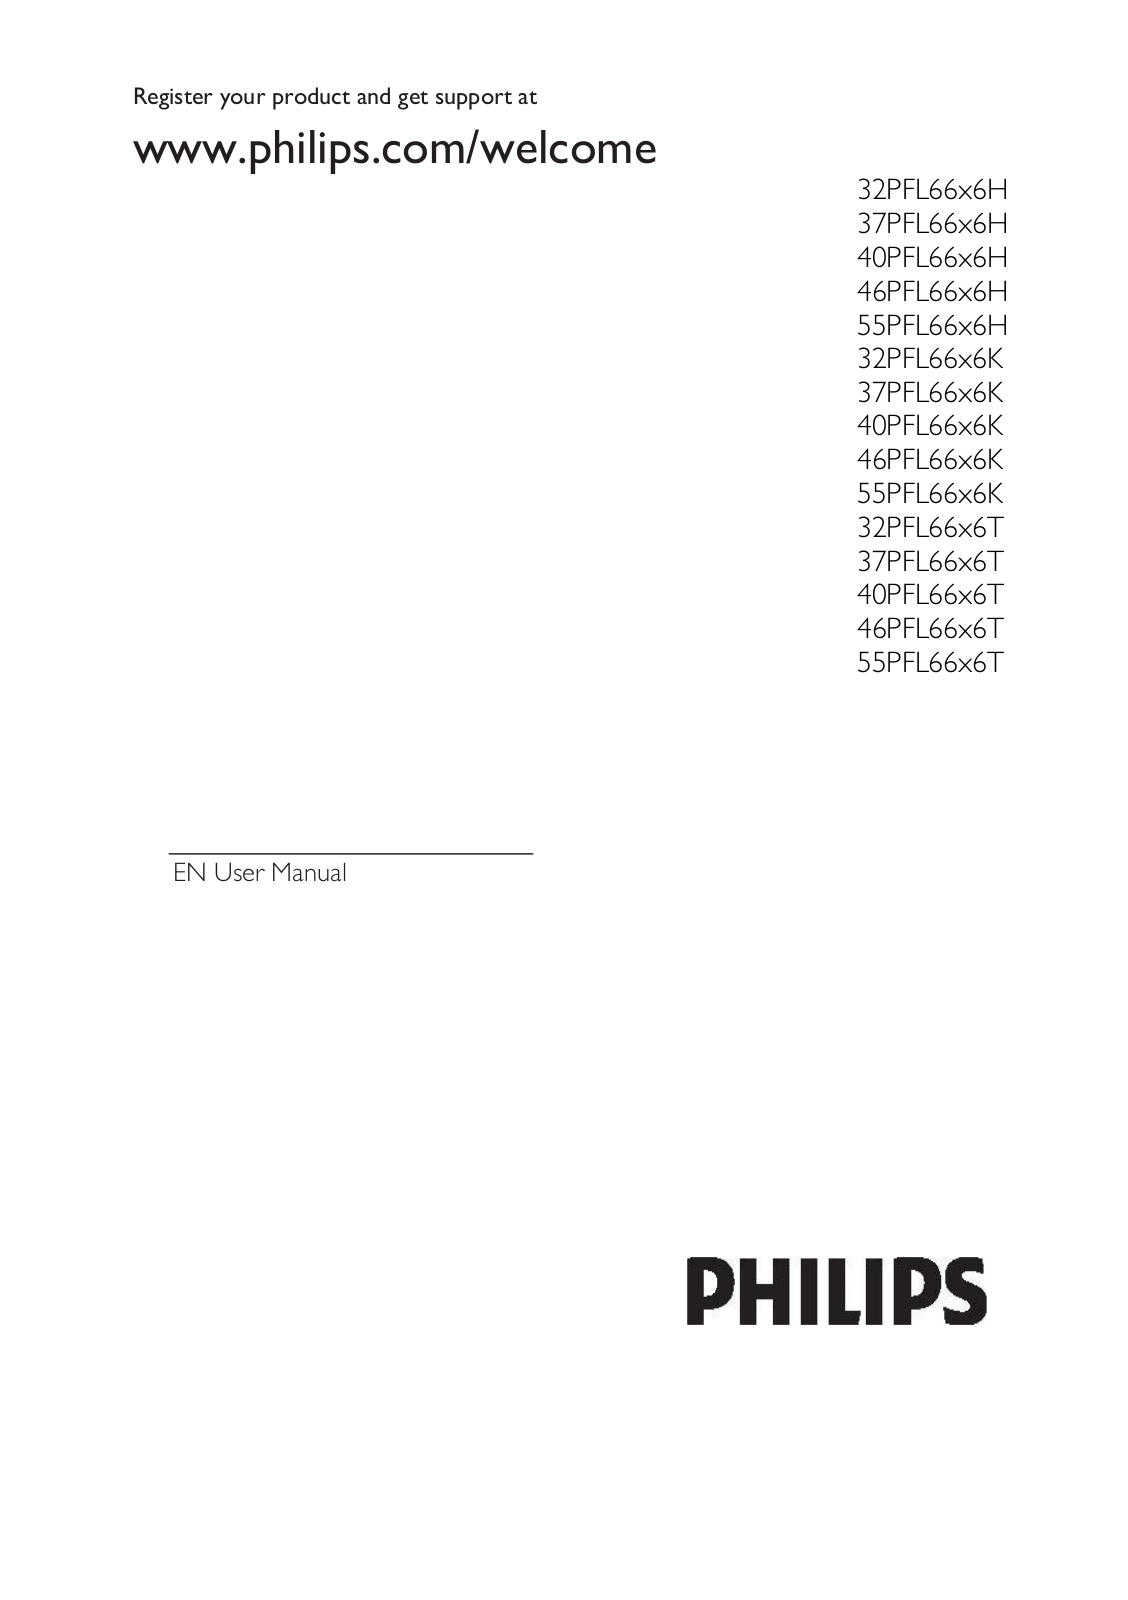 Philips 40PFL66X6K, 46PFL66X6H, 55PFL66X6K, 40PFL66X6H, 37PFL66X6T User Manual